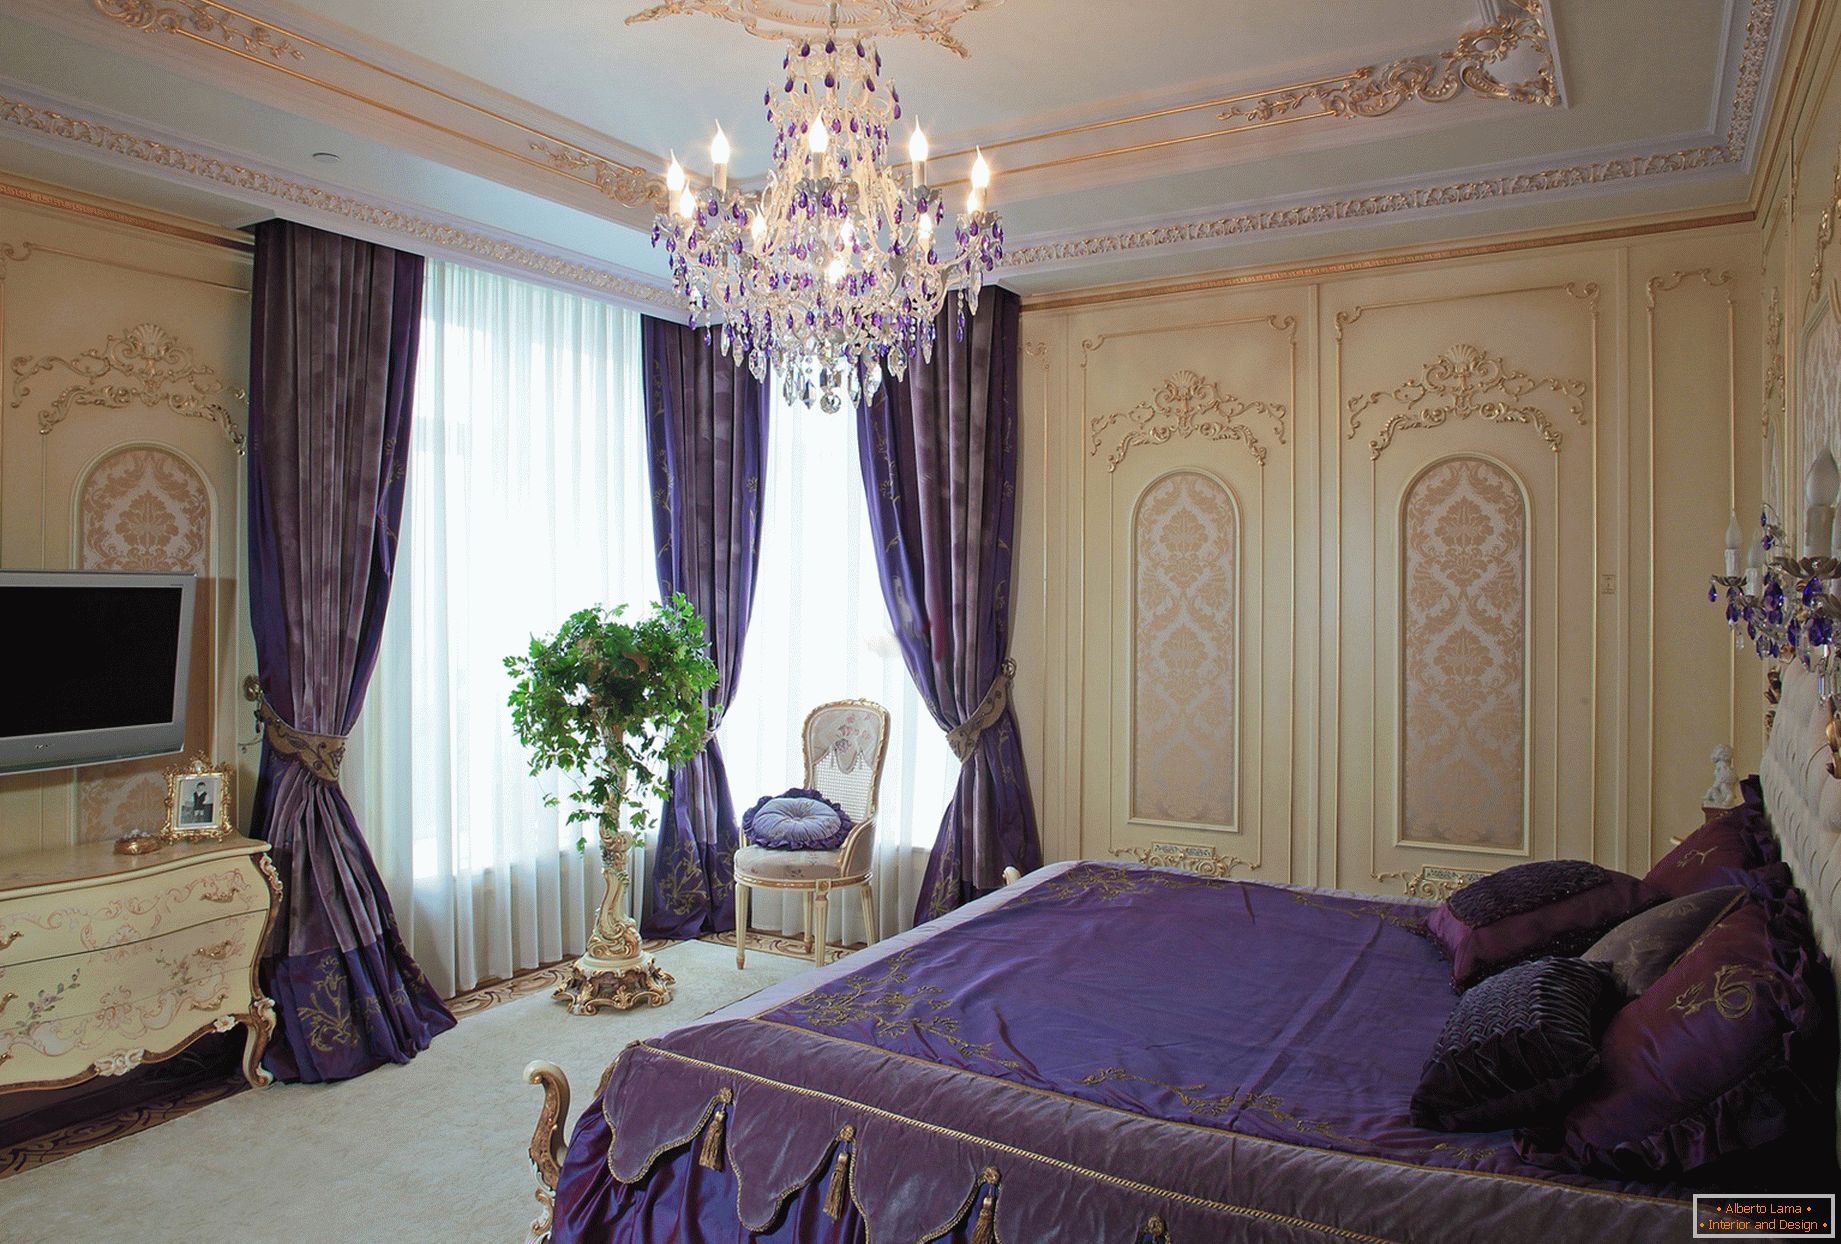 Модерна спаваћа соба у барокном стилу. Суптилан дизајн концепта - тамно љубичасте завесе су комбиноване са постељином у тону.